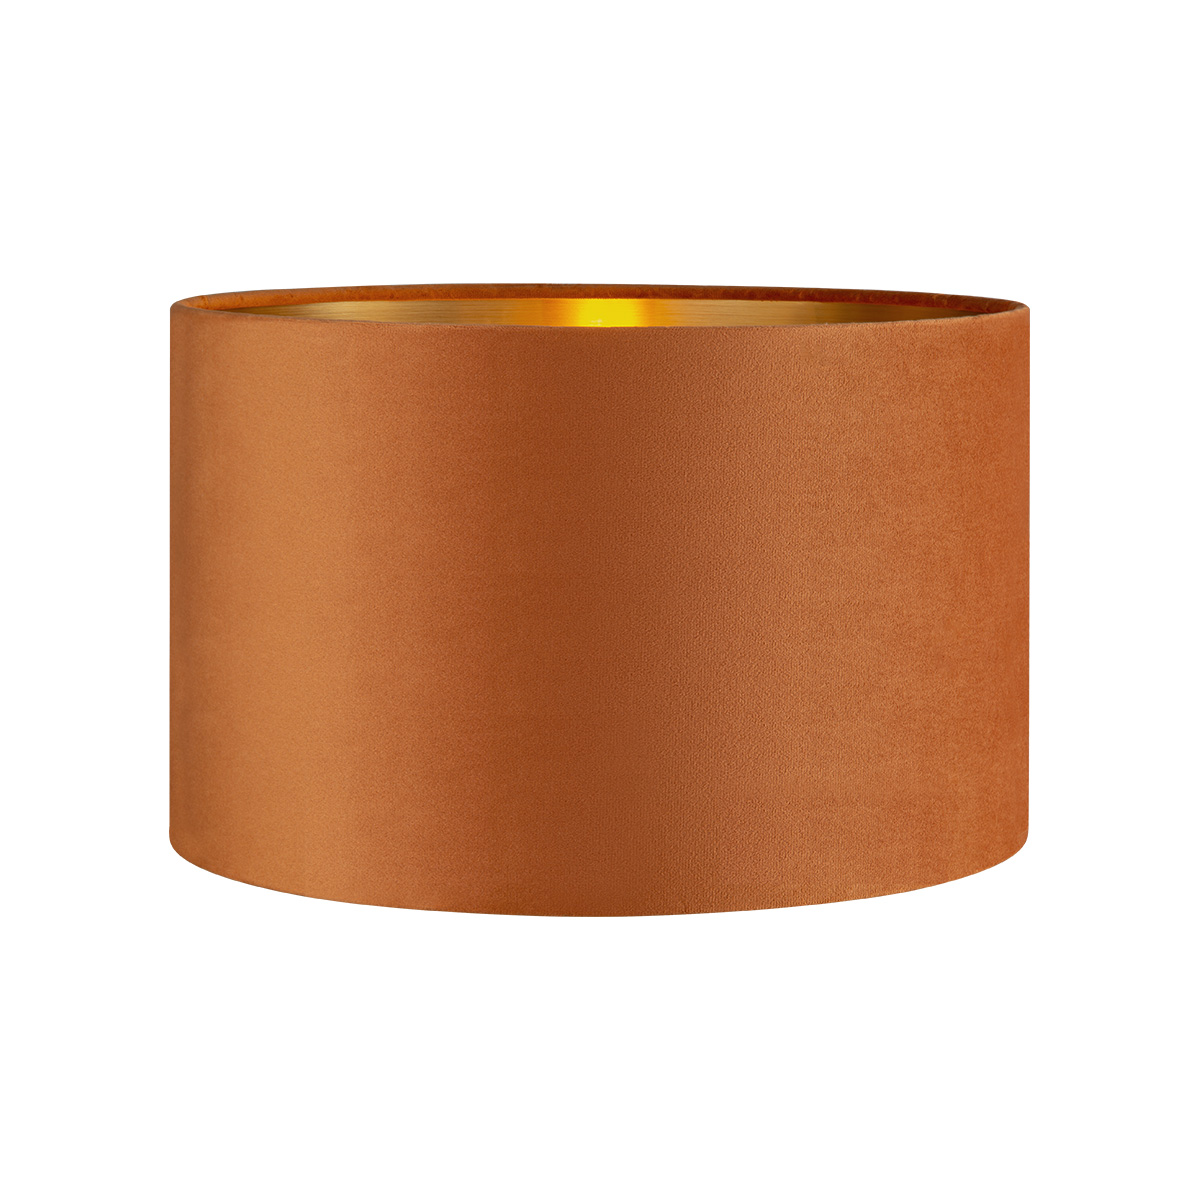 Tangla lighting - TLS7564-35OG - Lampshade - velvet - orange - diameter 35cm - E27